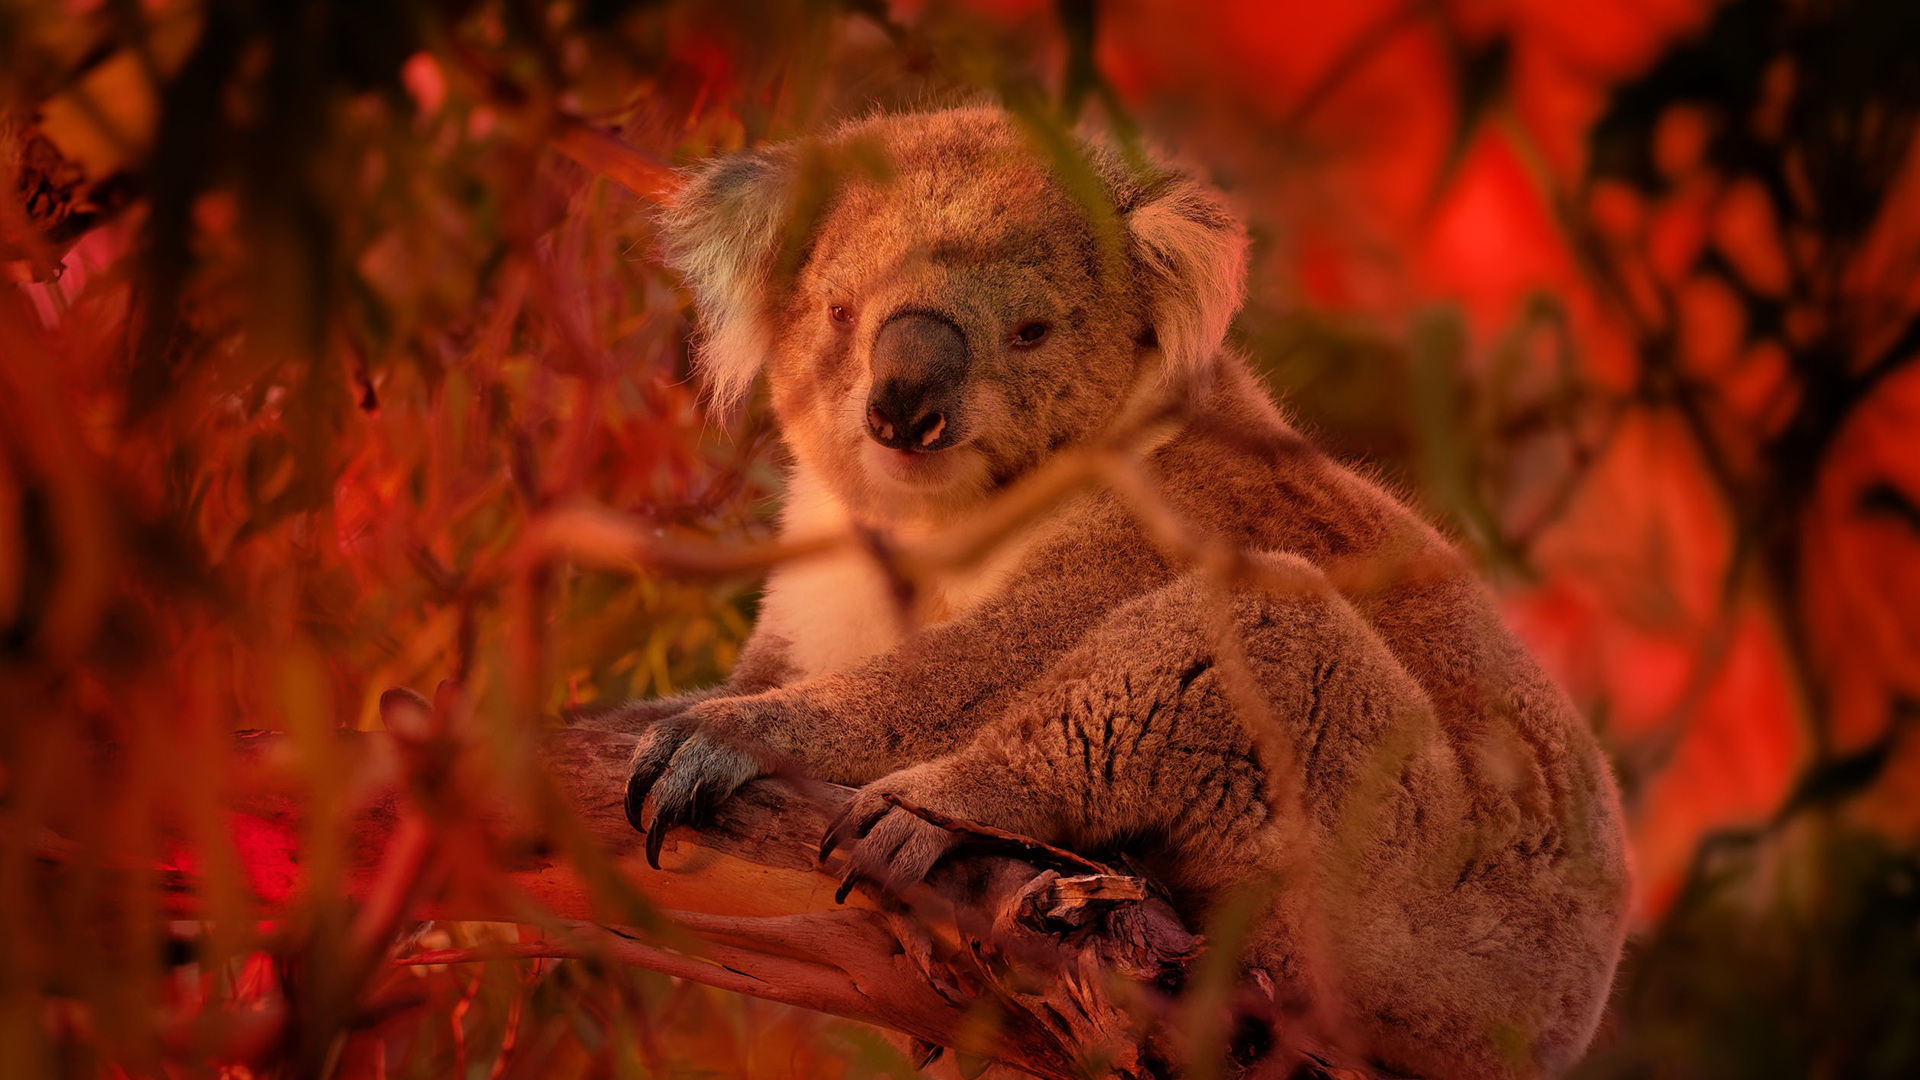 Nature | Meet Bear, the Koala Detection Dog | Season 39 | Episode 2 | PBS